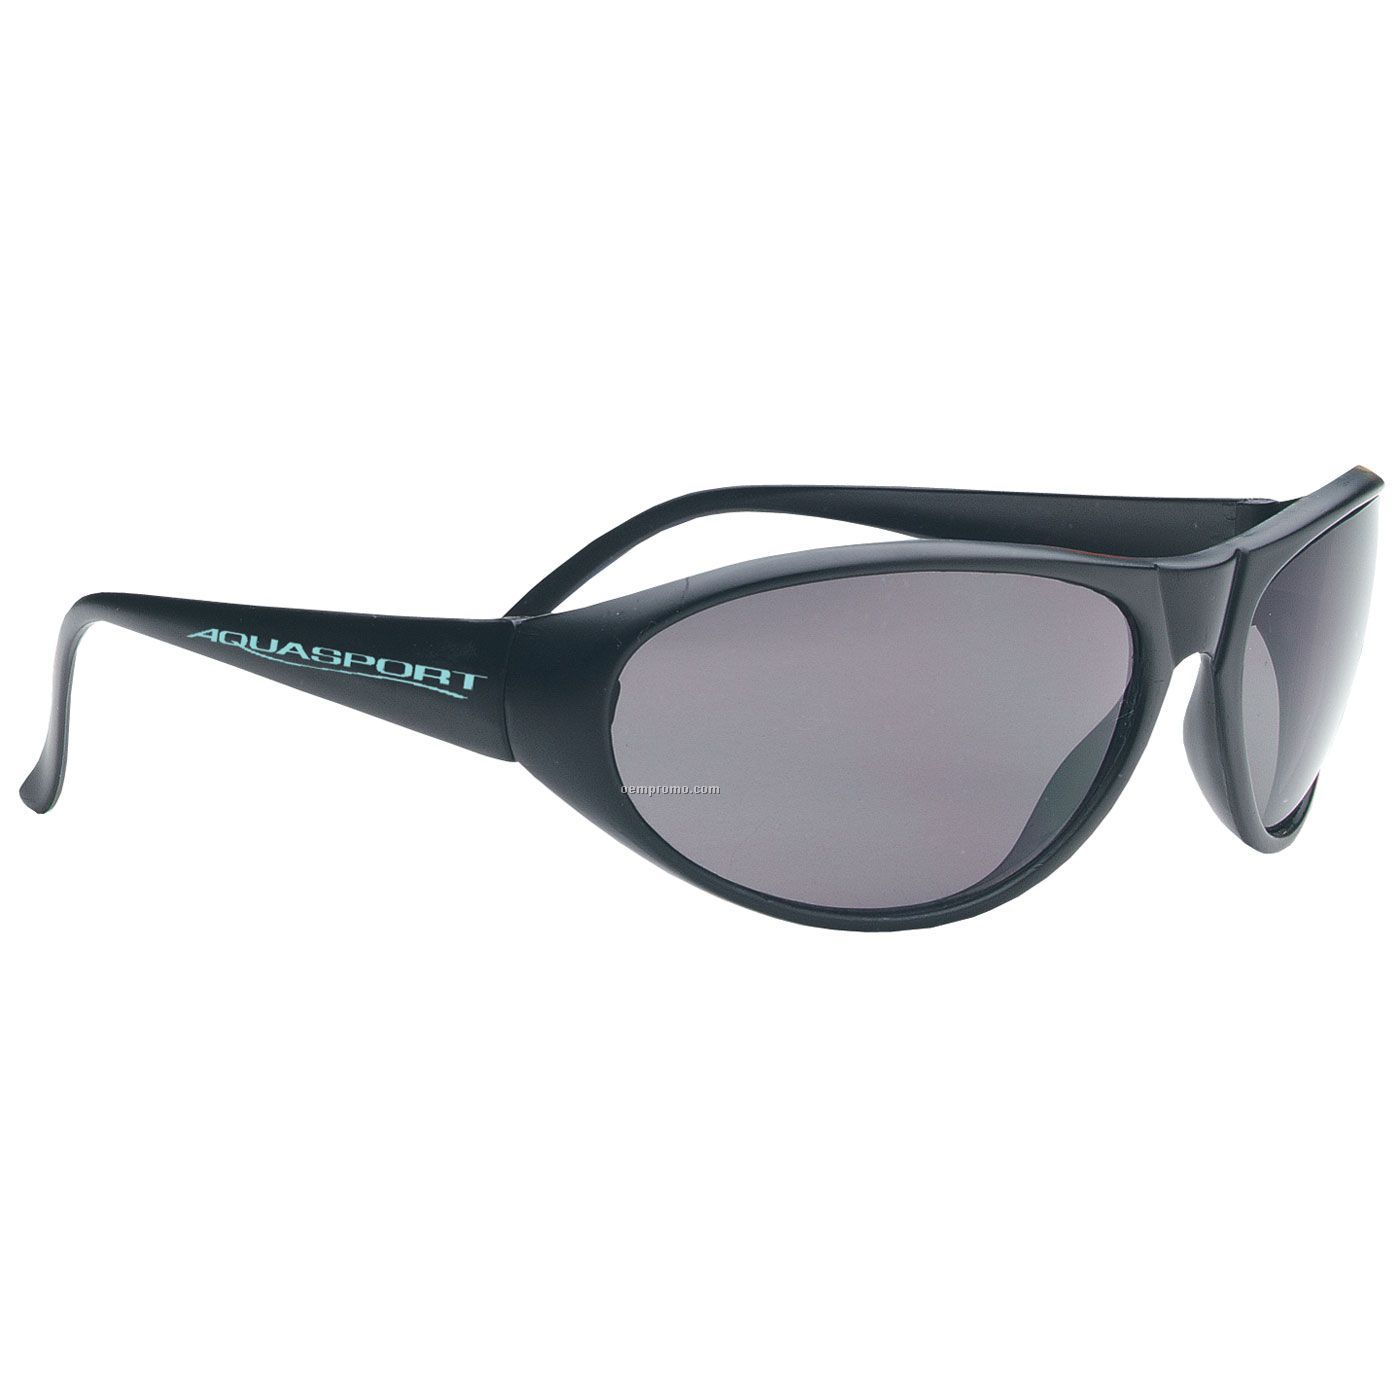 Rio Sport Wraps Classic Wrap Sunglasses - Black Frame/Smoked Lens